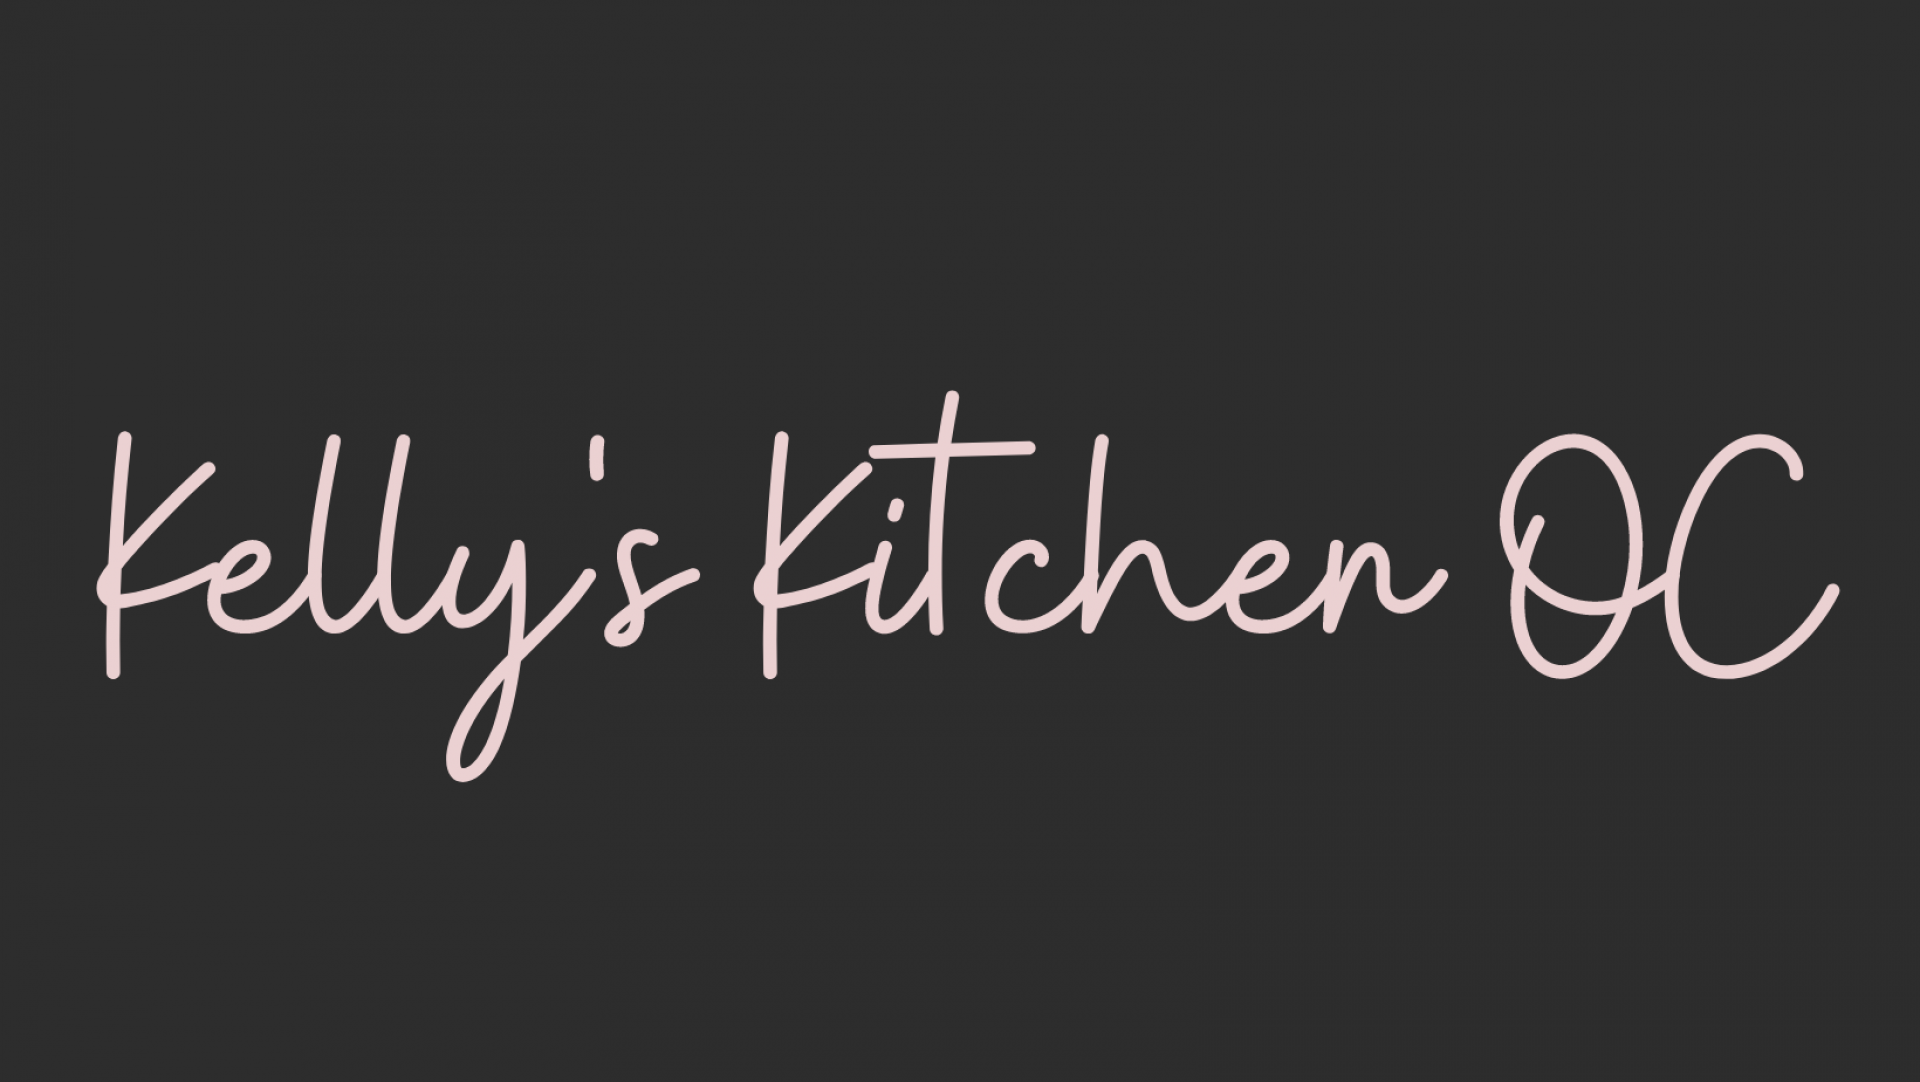 Kelly's Kitchen OC